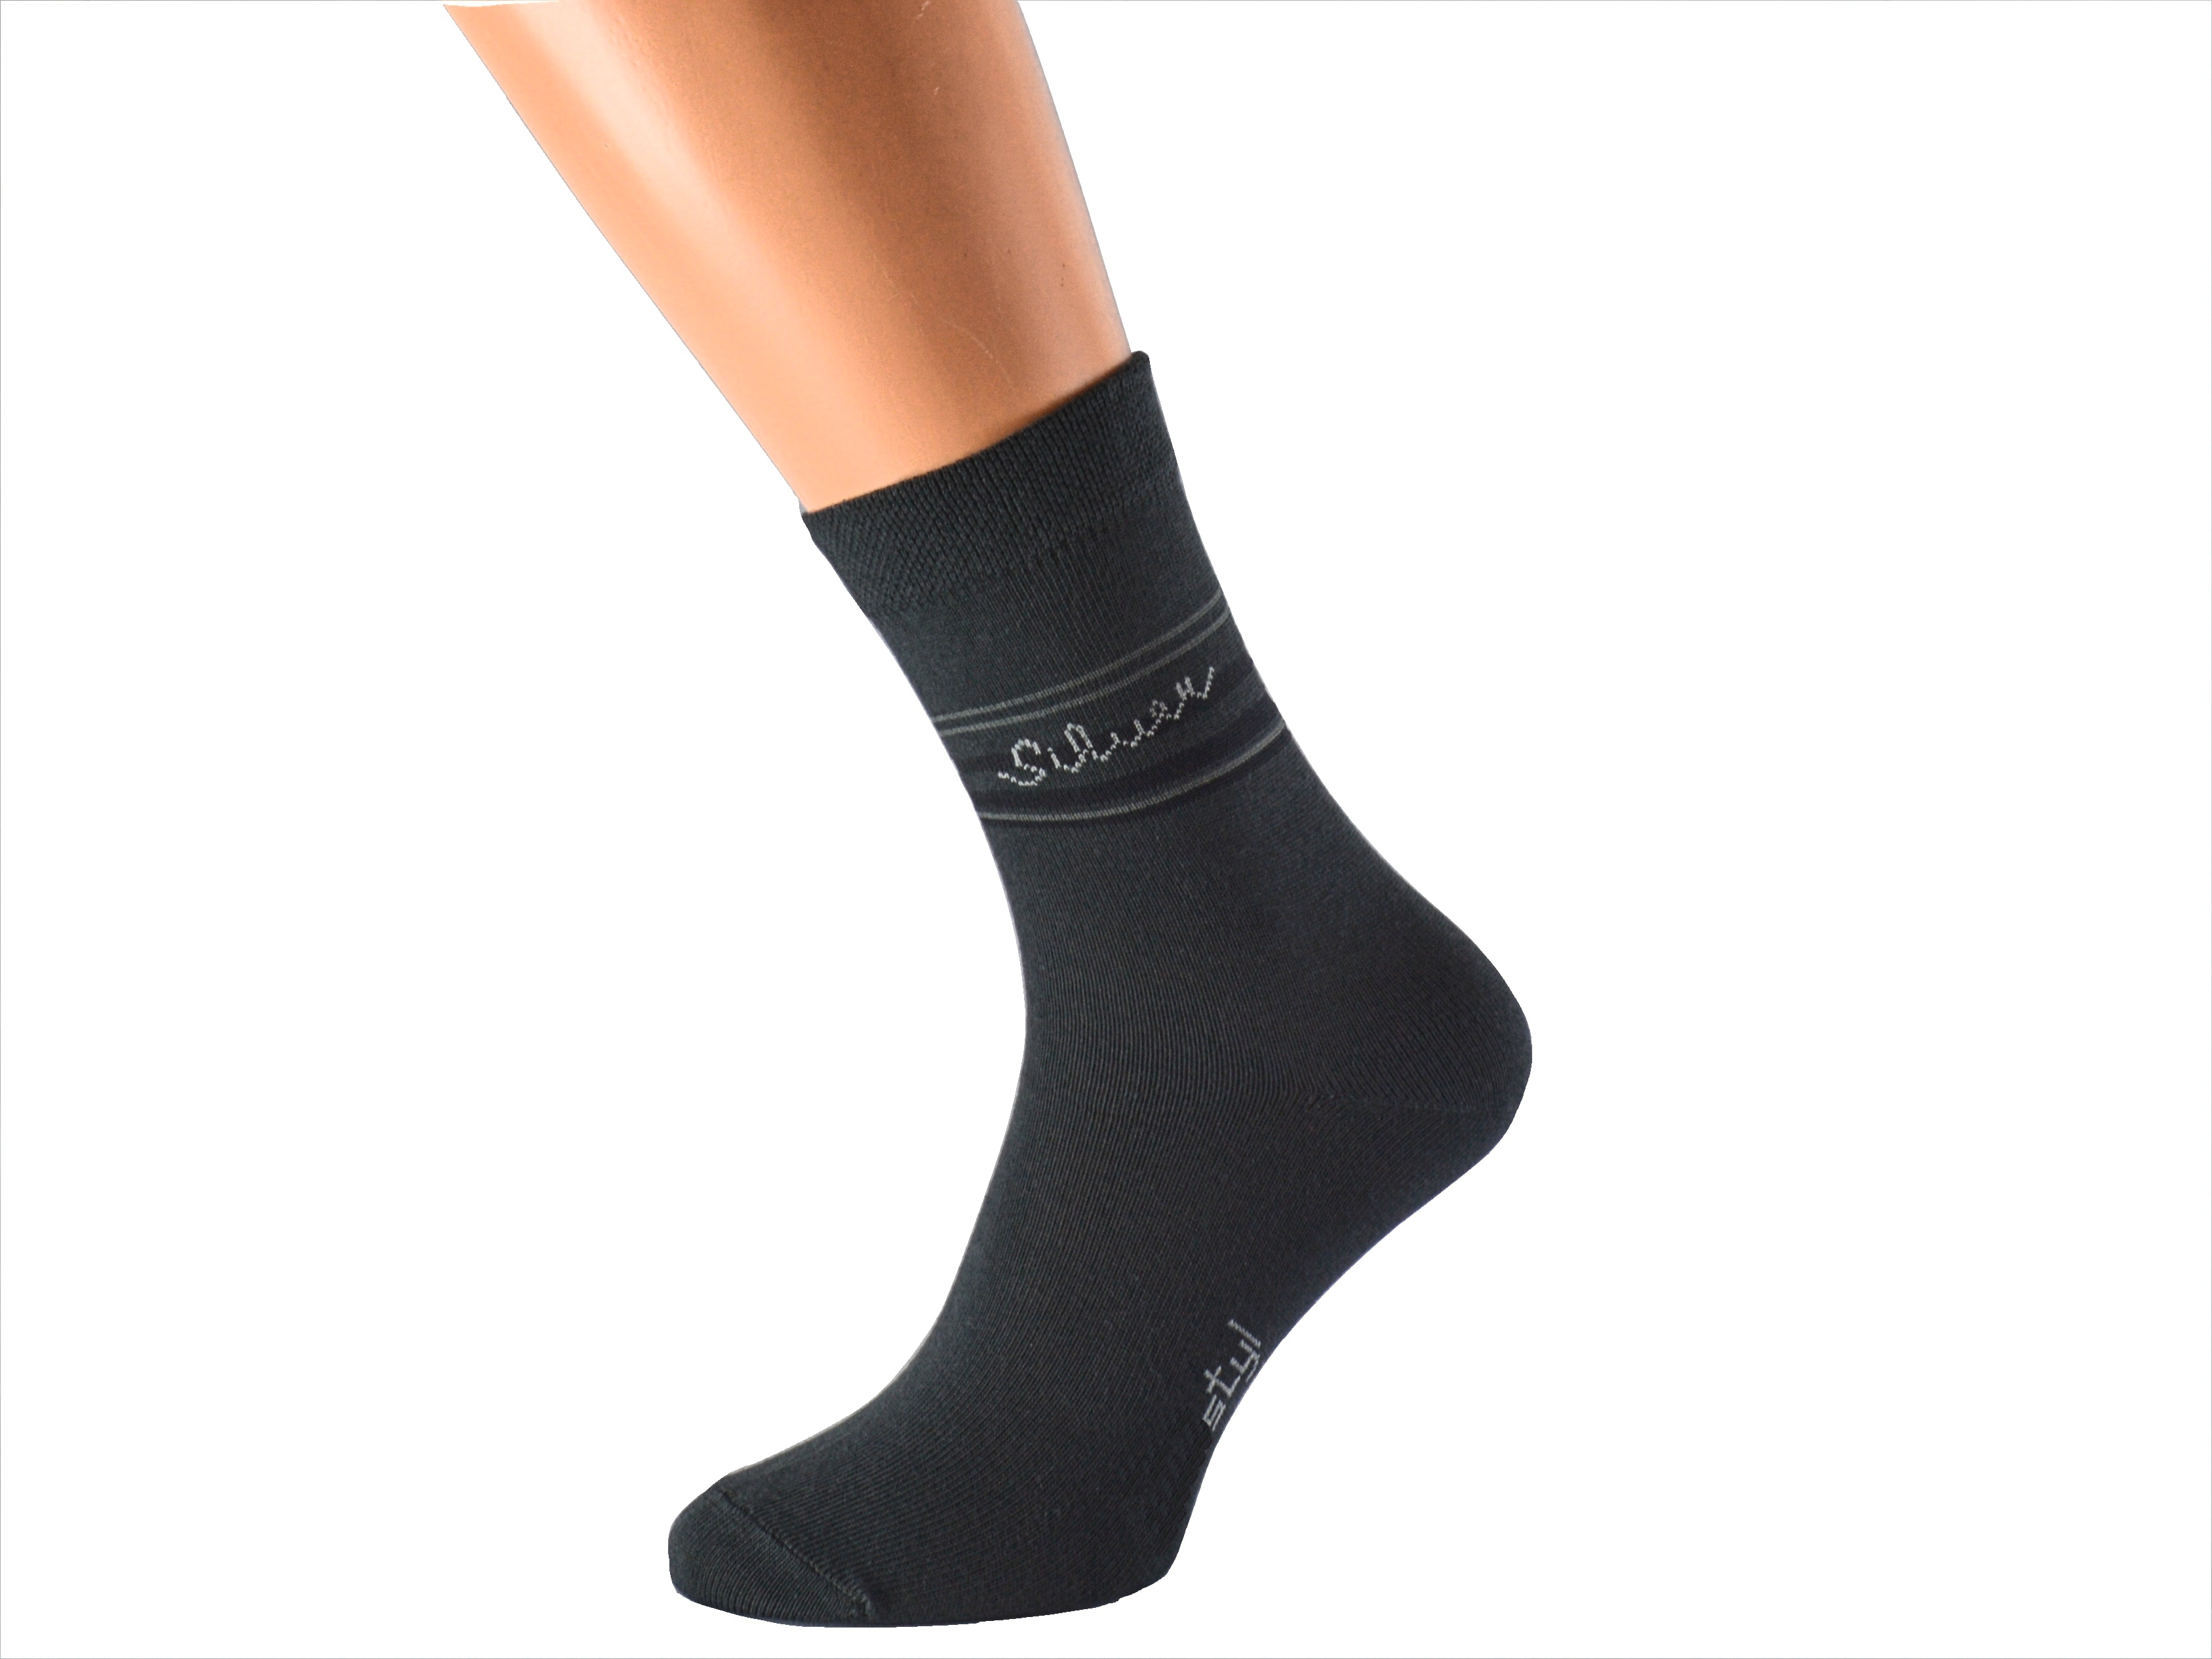 Ponožky se stříbrem proti pocení SILVER KUKS Barva: Tmavě šedé, Velikost: EUR 41-42 (UK 7-8)